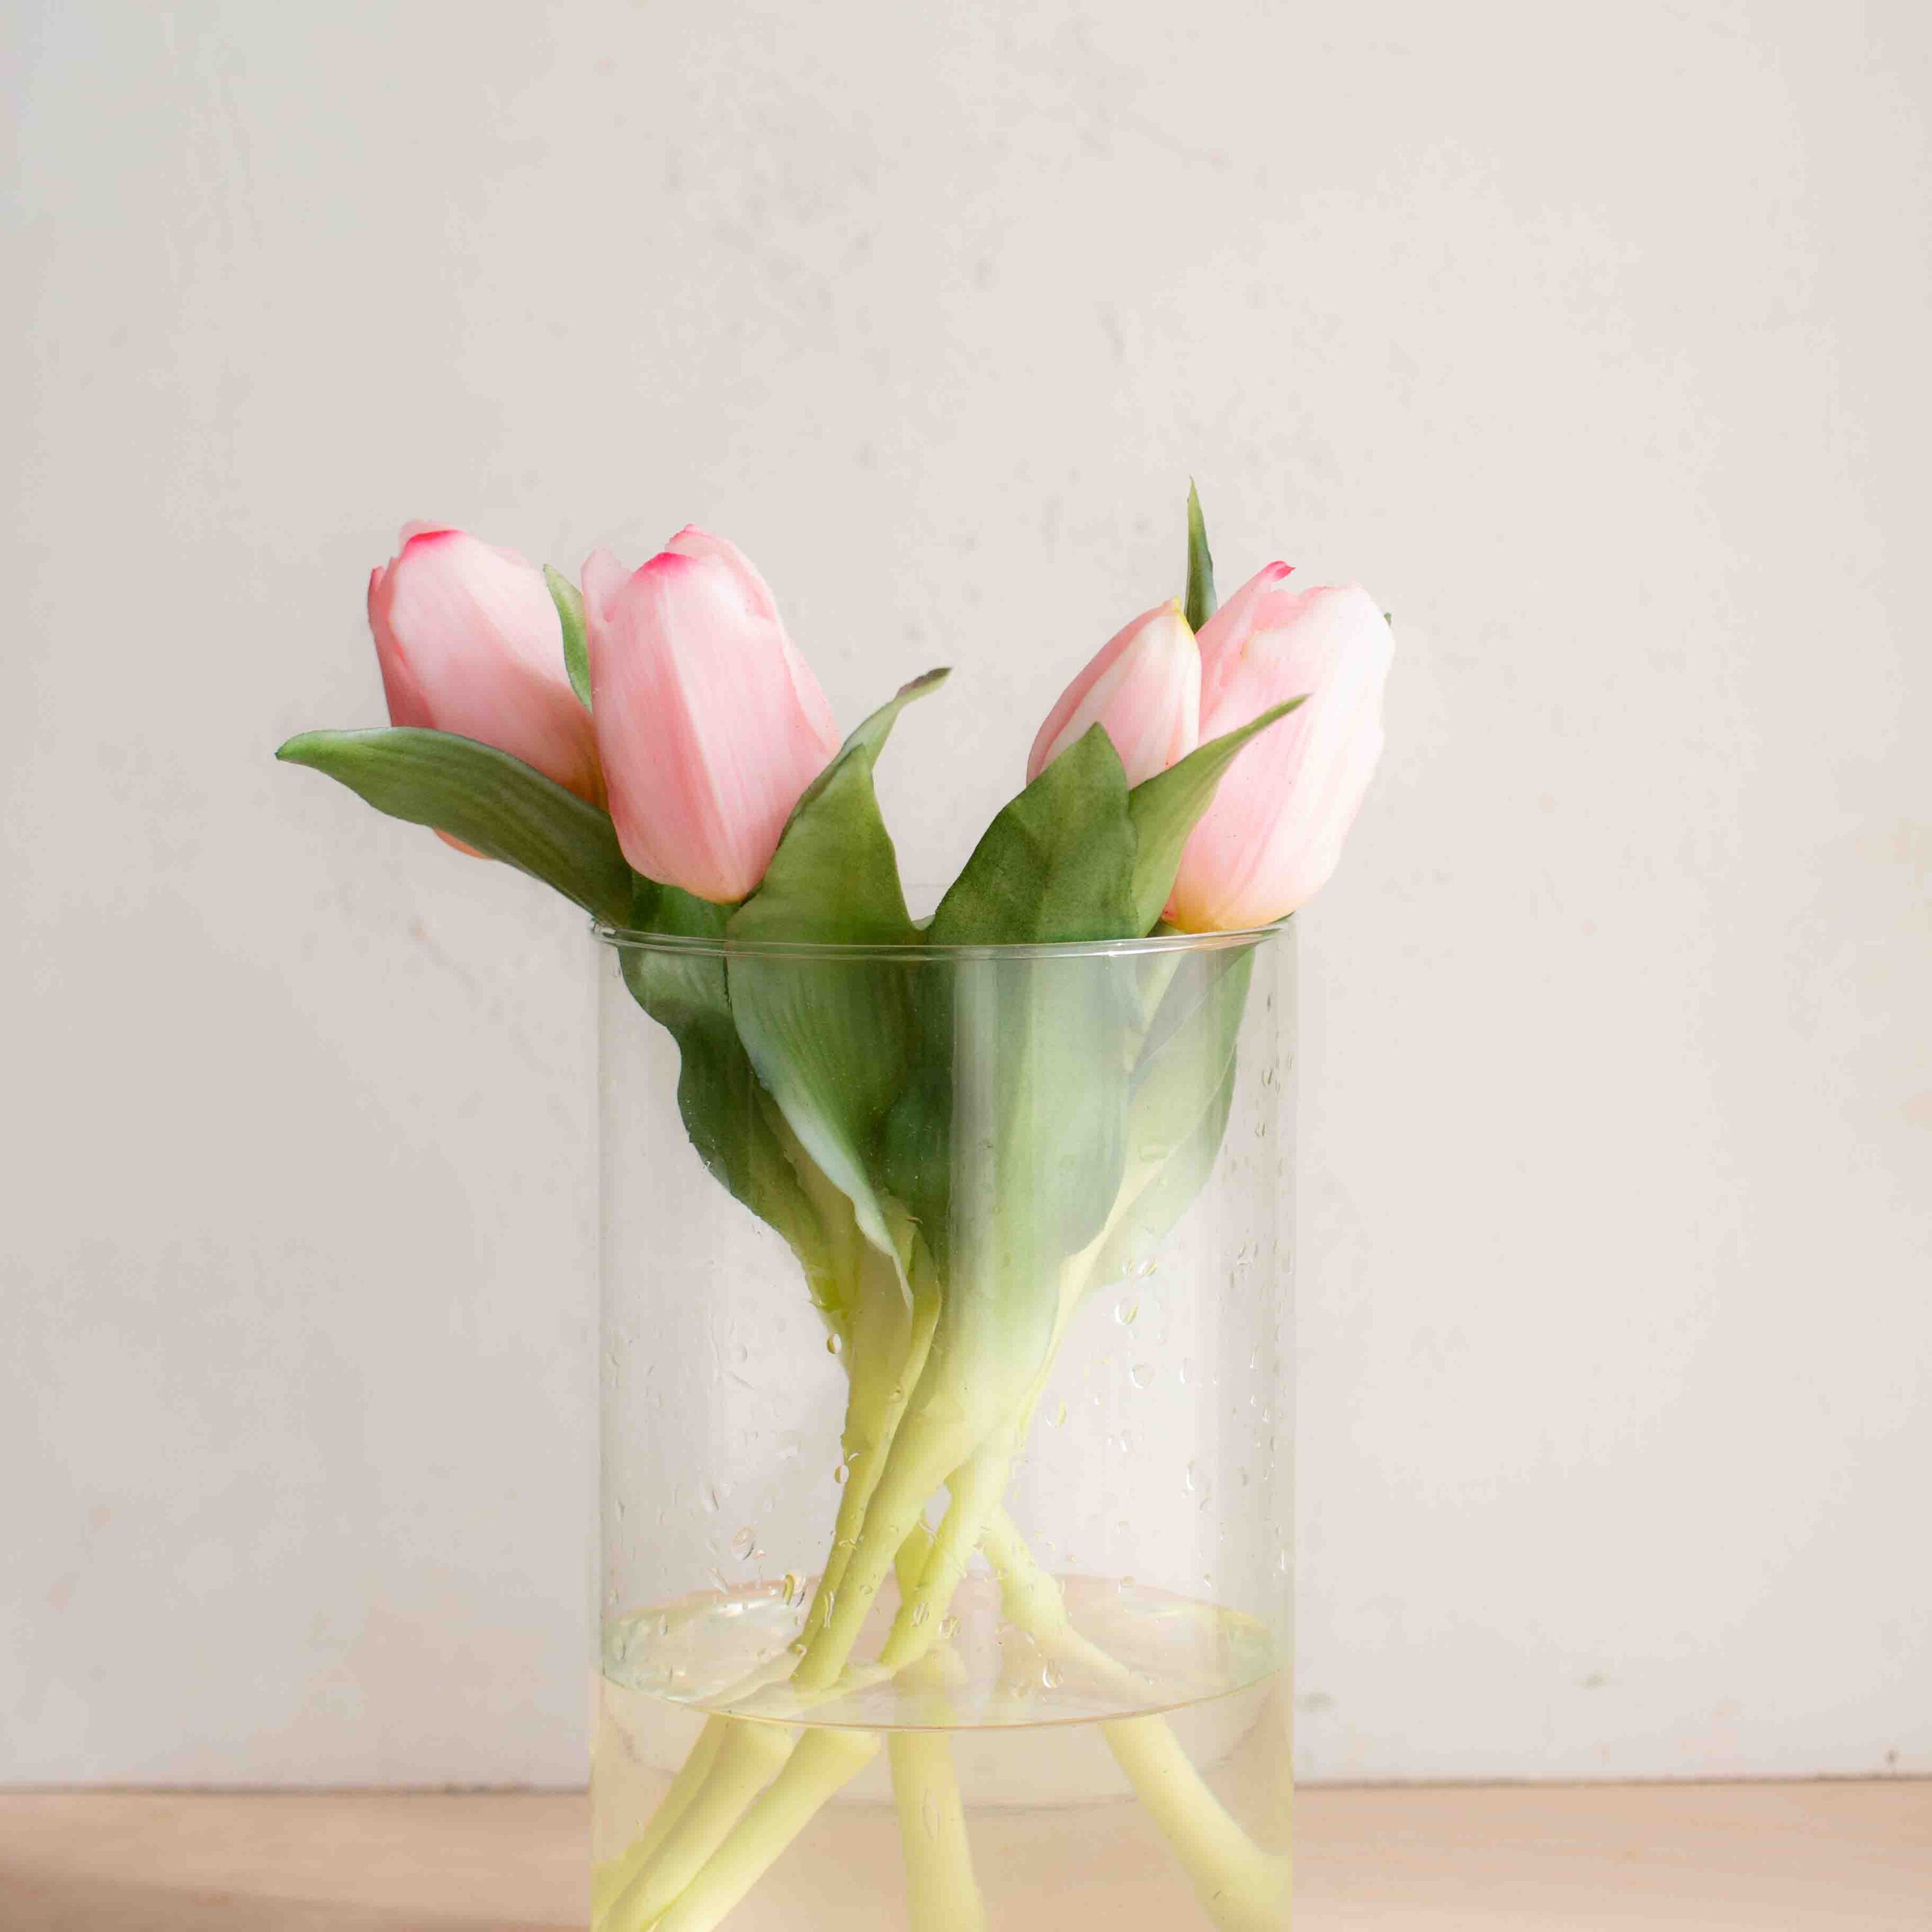 bellissimi tulipani real touch, estremamente realistici colore rosa scuro